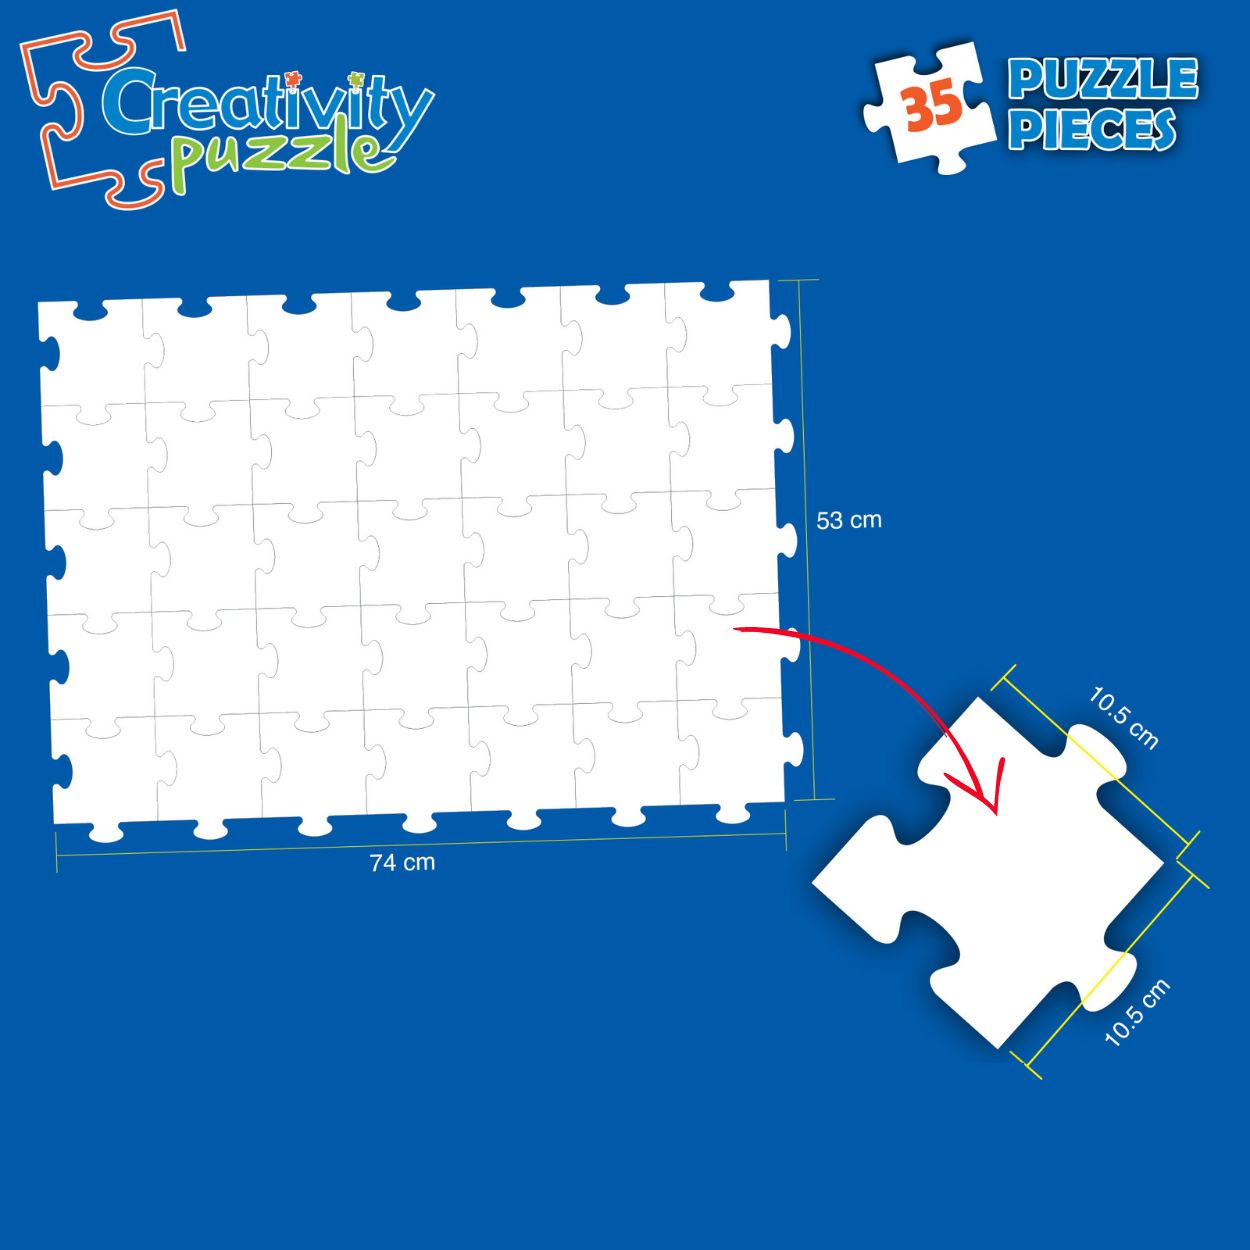 Creativity Puzzle (Non Erasable) White Blank Puzzle